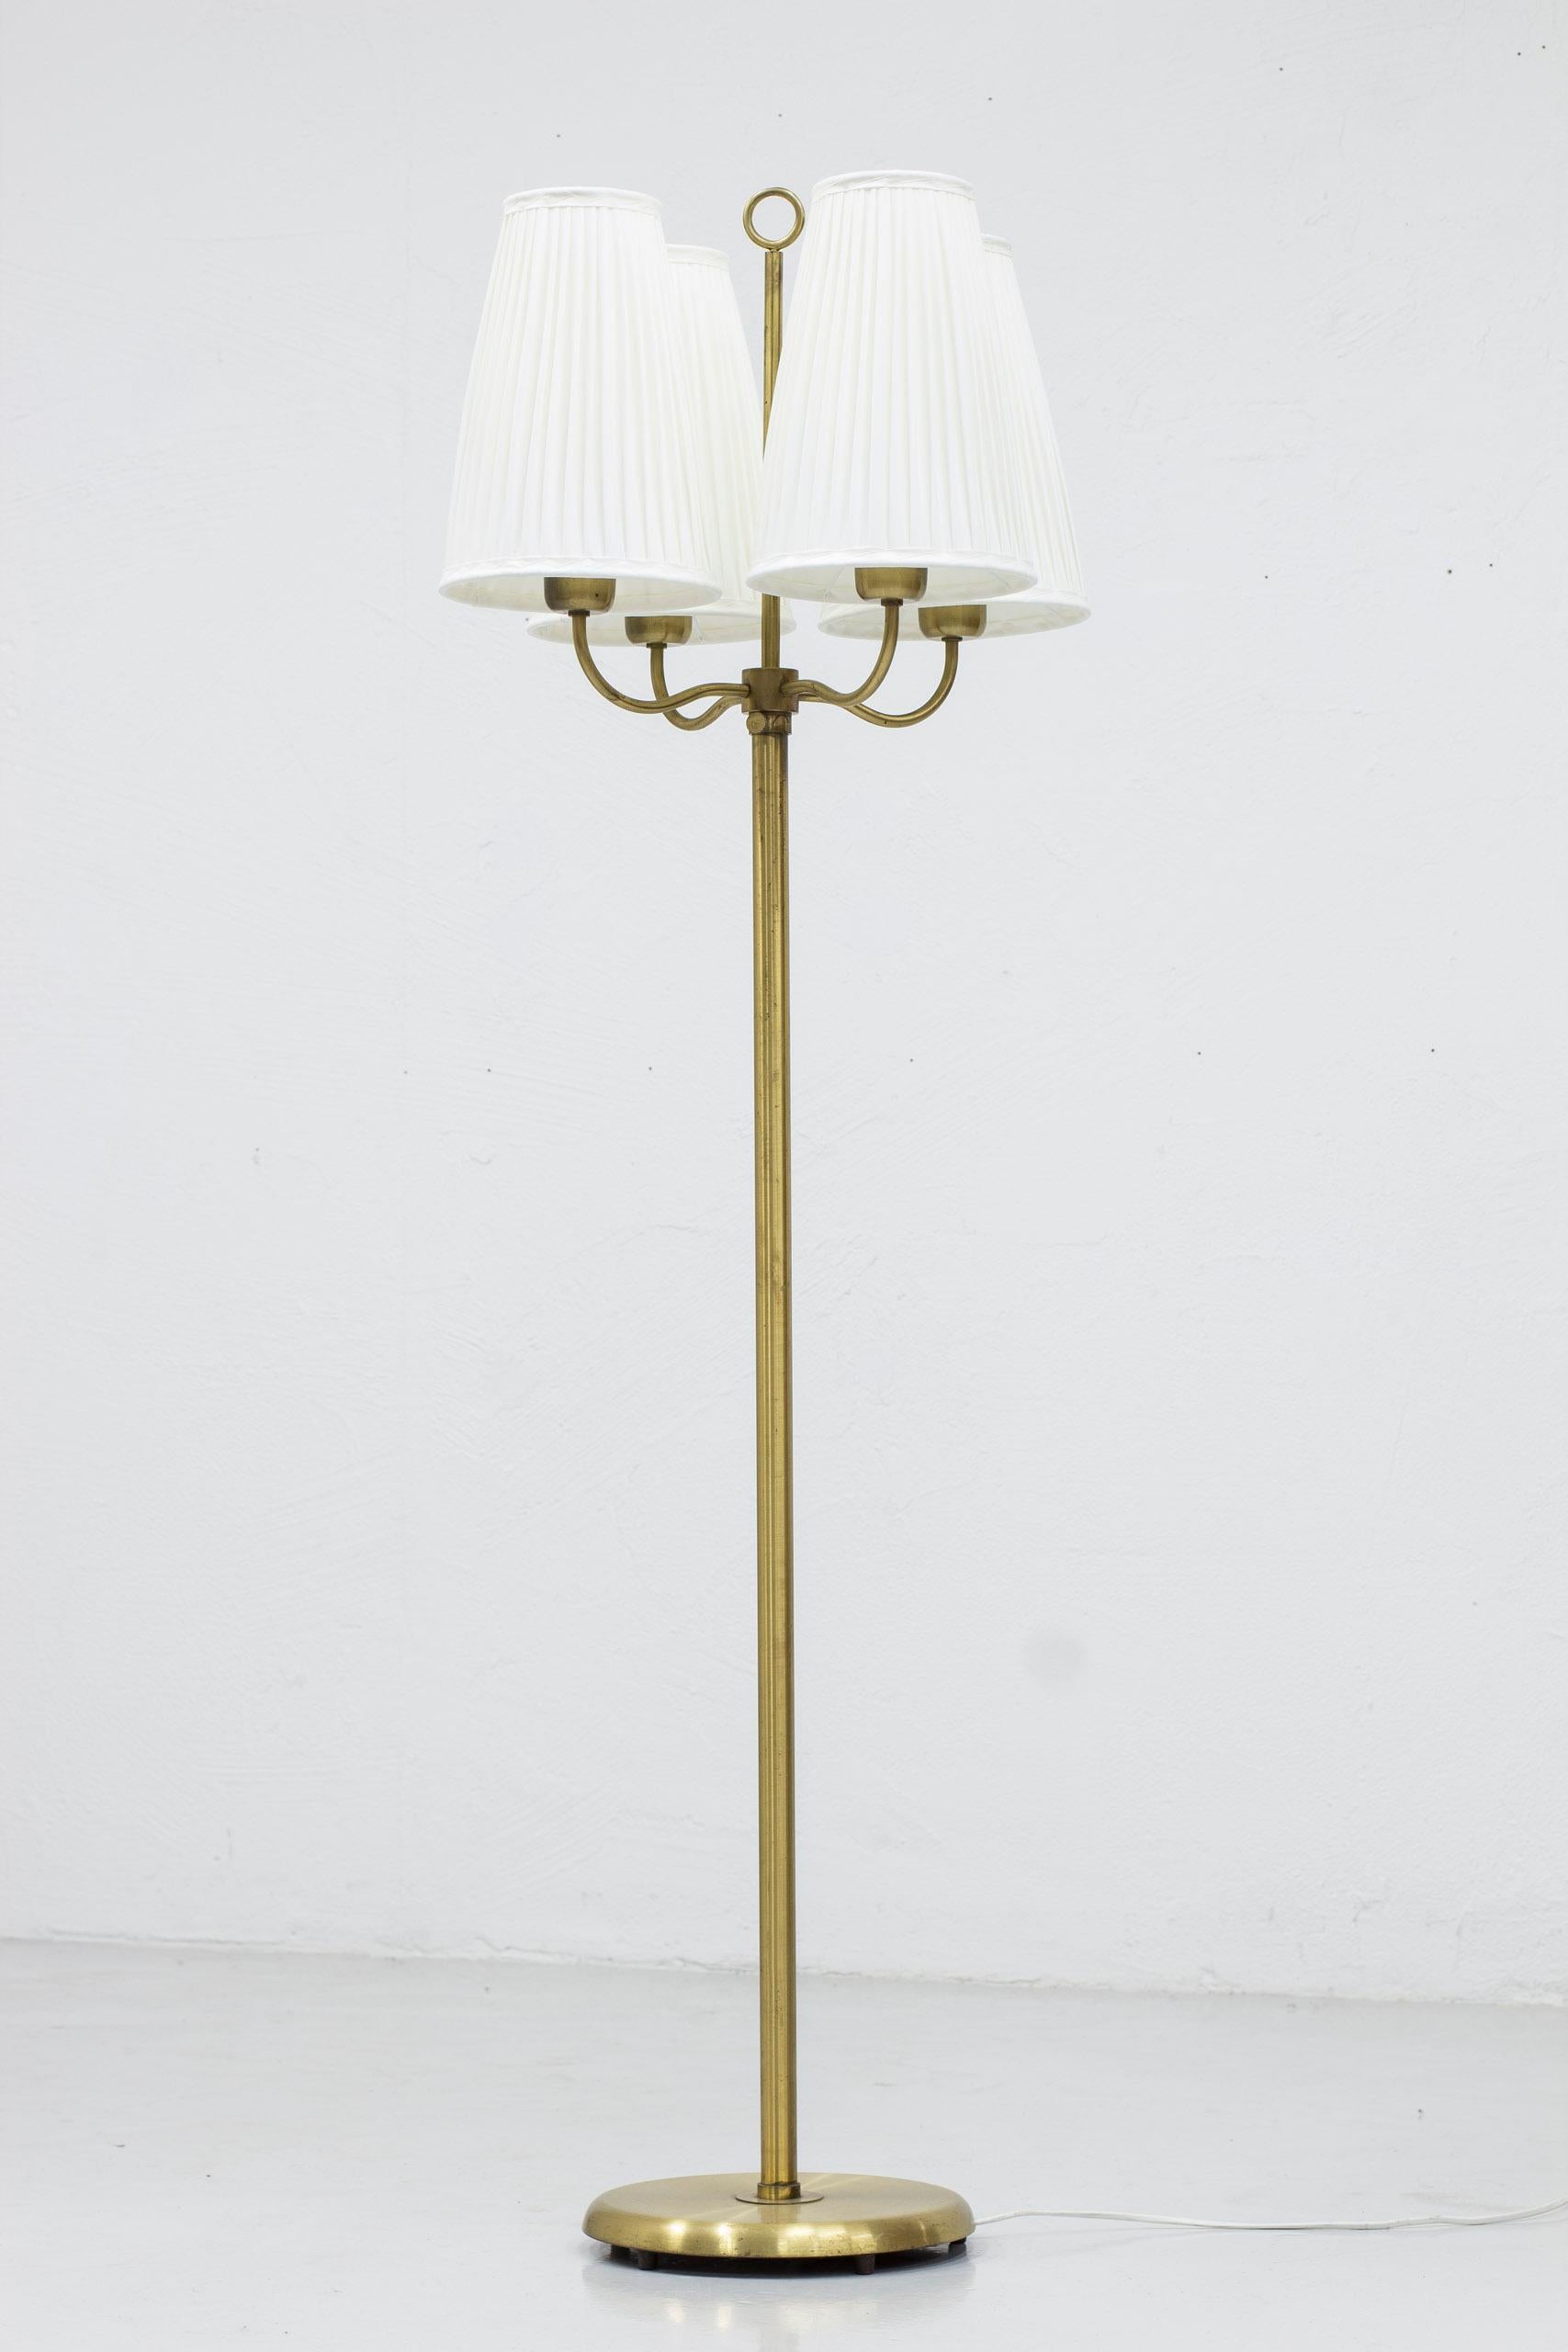 Vierarmige moderne schwedische Stehleuchte, die an die Werke von Josef Frank erinnert. Entworfen und hergestellt in Schweden, ca. 1940er Jahre. Aus Messing mit vier großen, handgenähten Schirmen mit plissiertem Stoff in Off-White. Die Lampe ist in